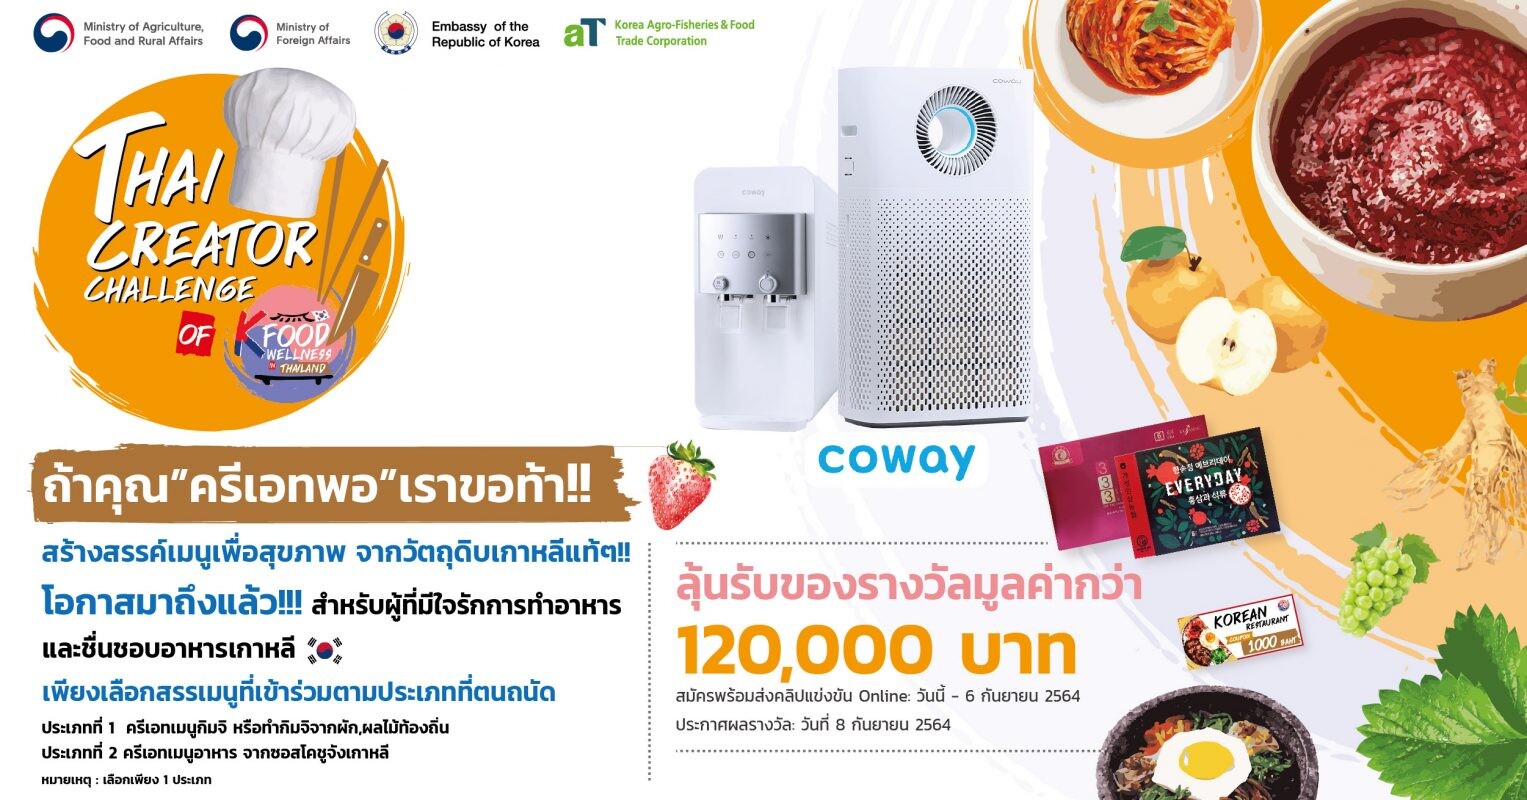 ขอเชิญส่งคลิปเข้าร่วมแข่งขันทำอาหารในหัวข้อ "Thai Creator Challenge of K-Food Wellness in Thailand"